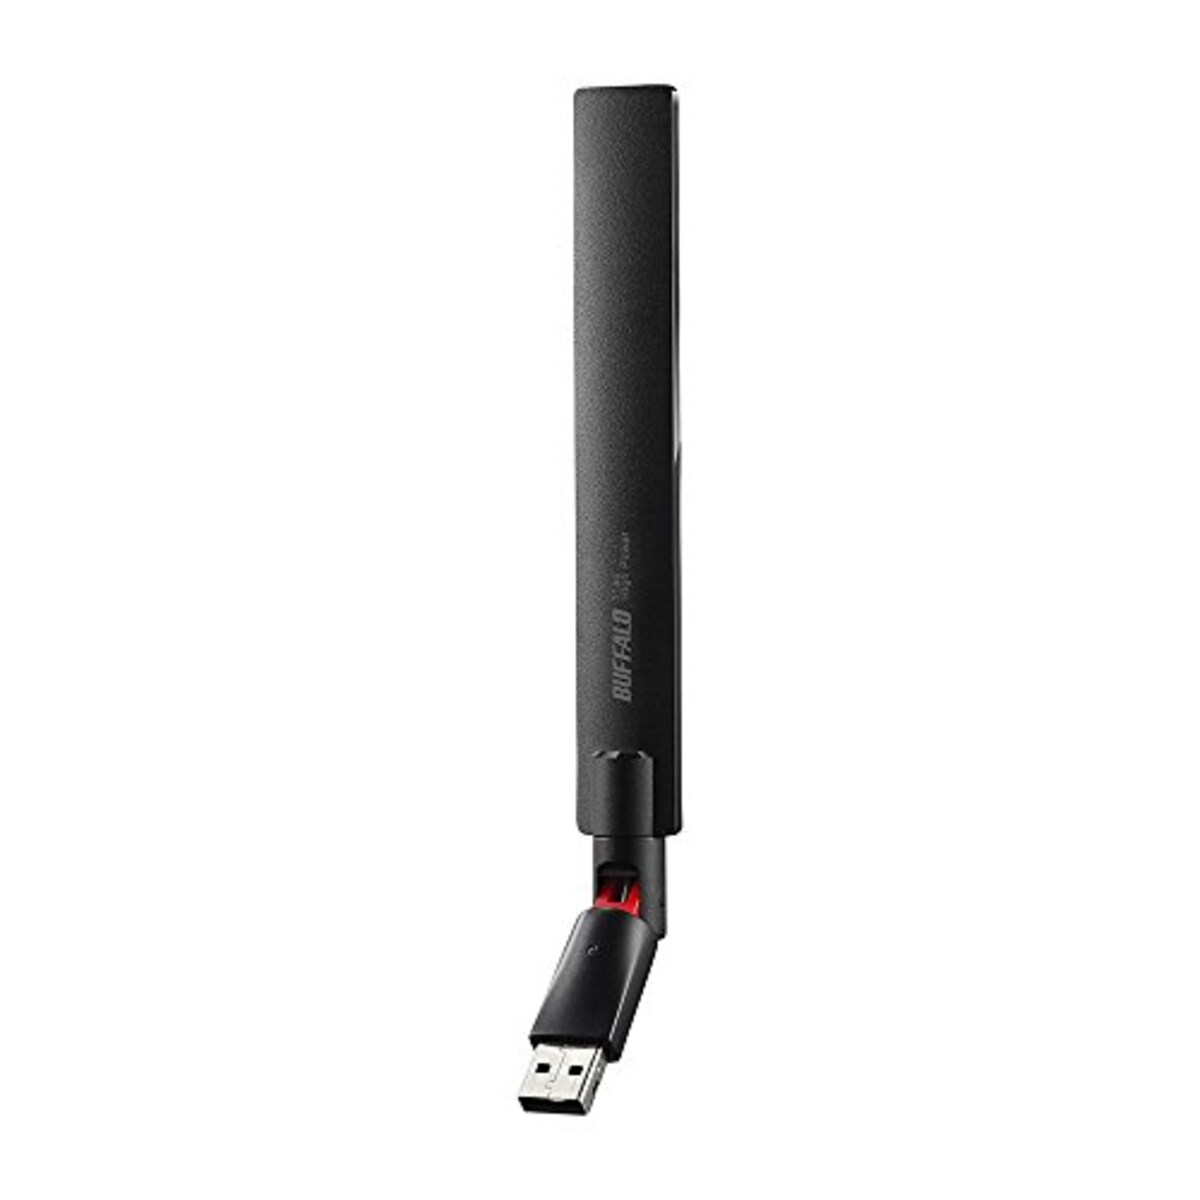  無線LAN子機 WI-U2-433DHP  11ac/n/a/g/b 433Mbps USB2.0用 画像2 